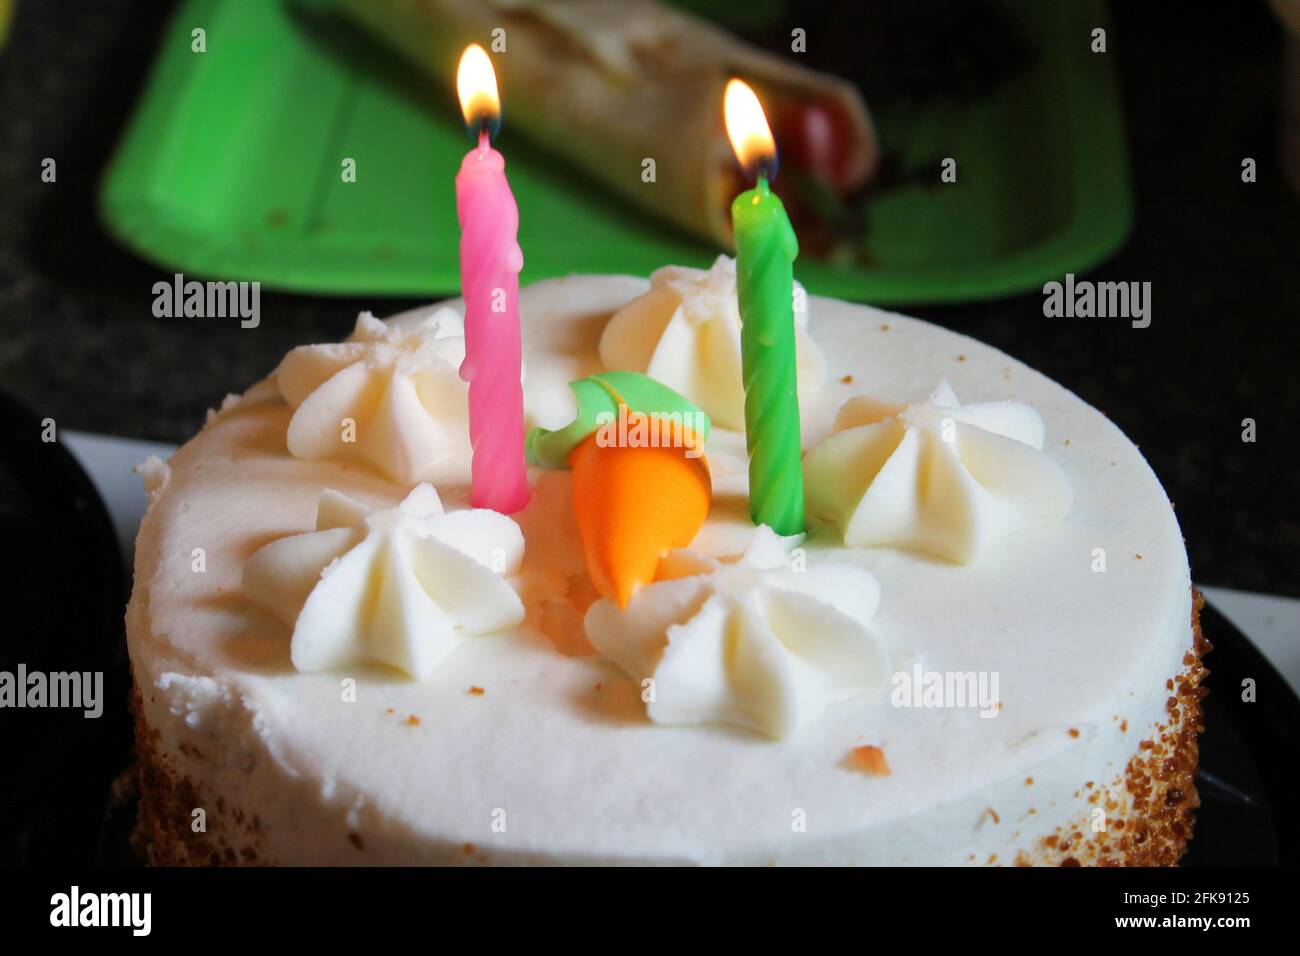 Nahaufnahme einer Karottenkuchen-Geburtstagstorte mit zwei Kerzen und einer orangefarbenen Puderkarotte darauf. Stockfoto